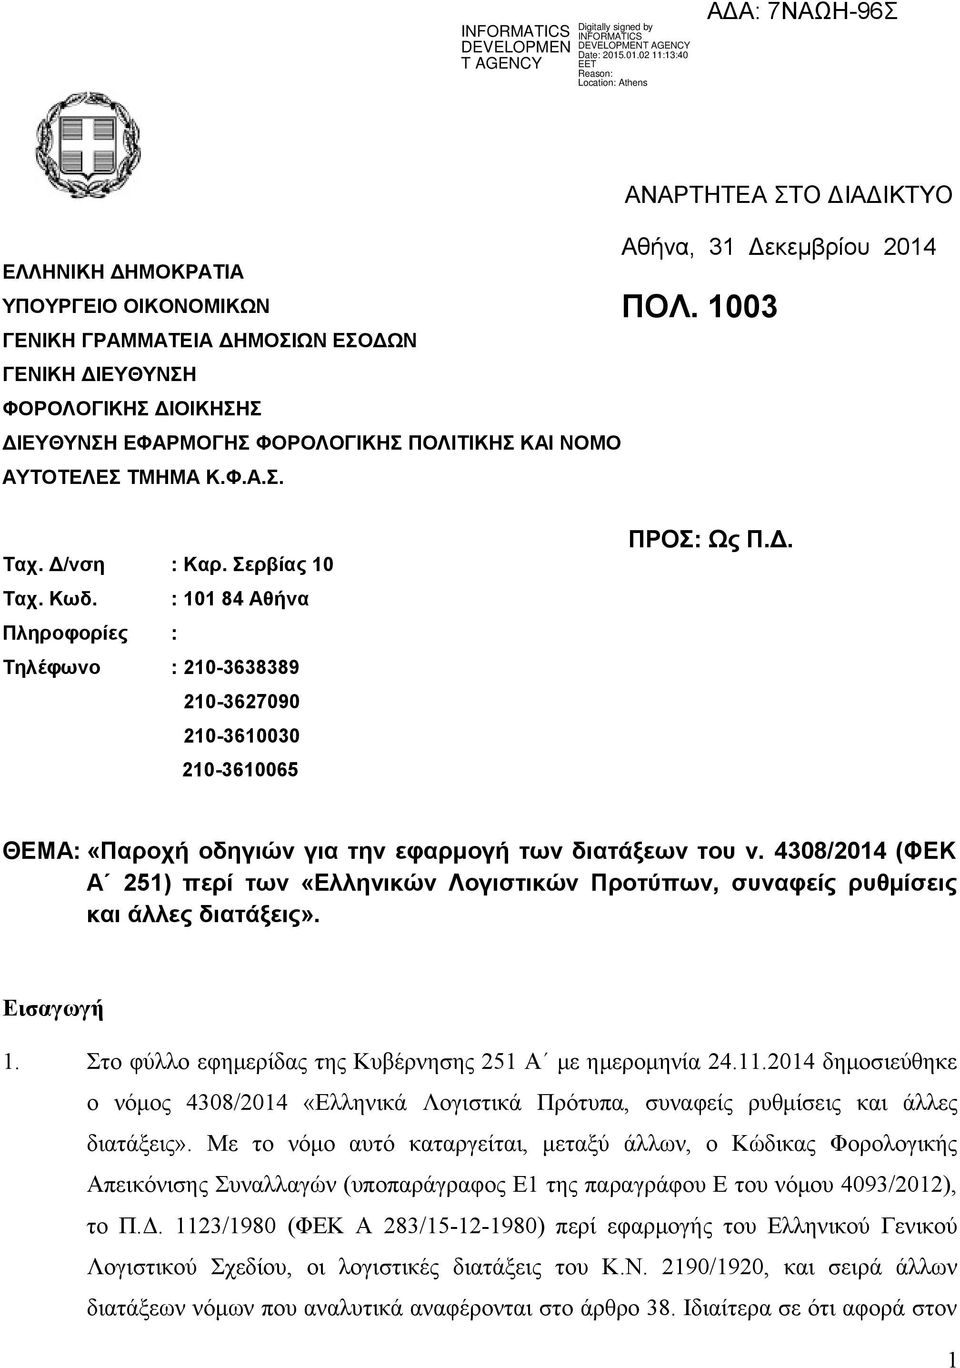 4308/2014 (ΦΕΚ Α 251) περί των «Ελληνικών Λογιστικών Προτύπων, συναφείς ρυθμίσεις και άλλες διατάξεις». Εισαγωγή 1. Στο φύλλο εφημερίδας της Κυβέρνησης 251 Α με ημερομηνία 24.11.